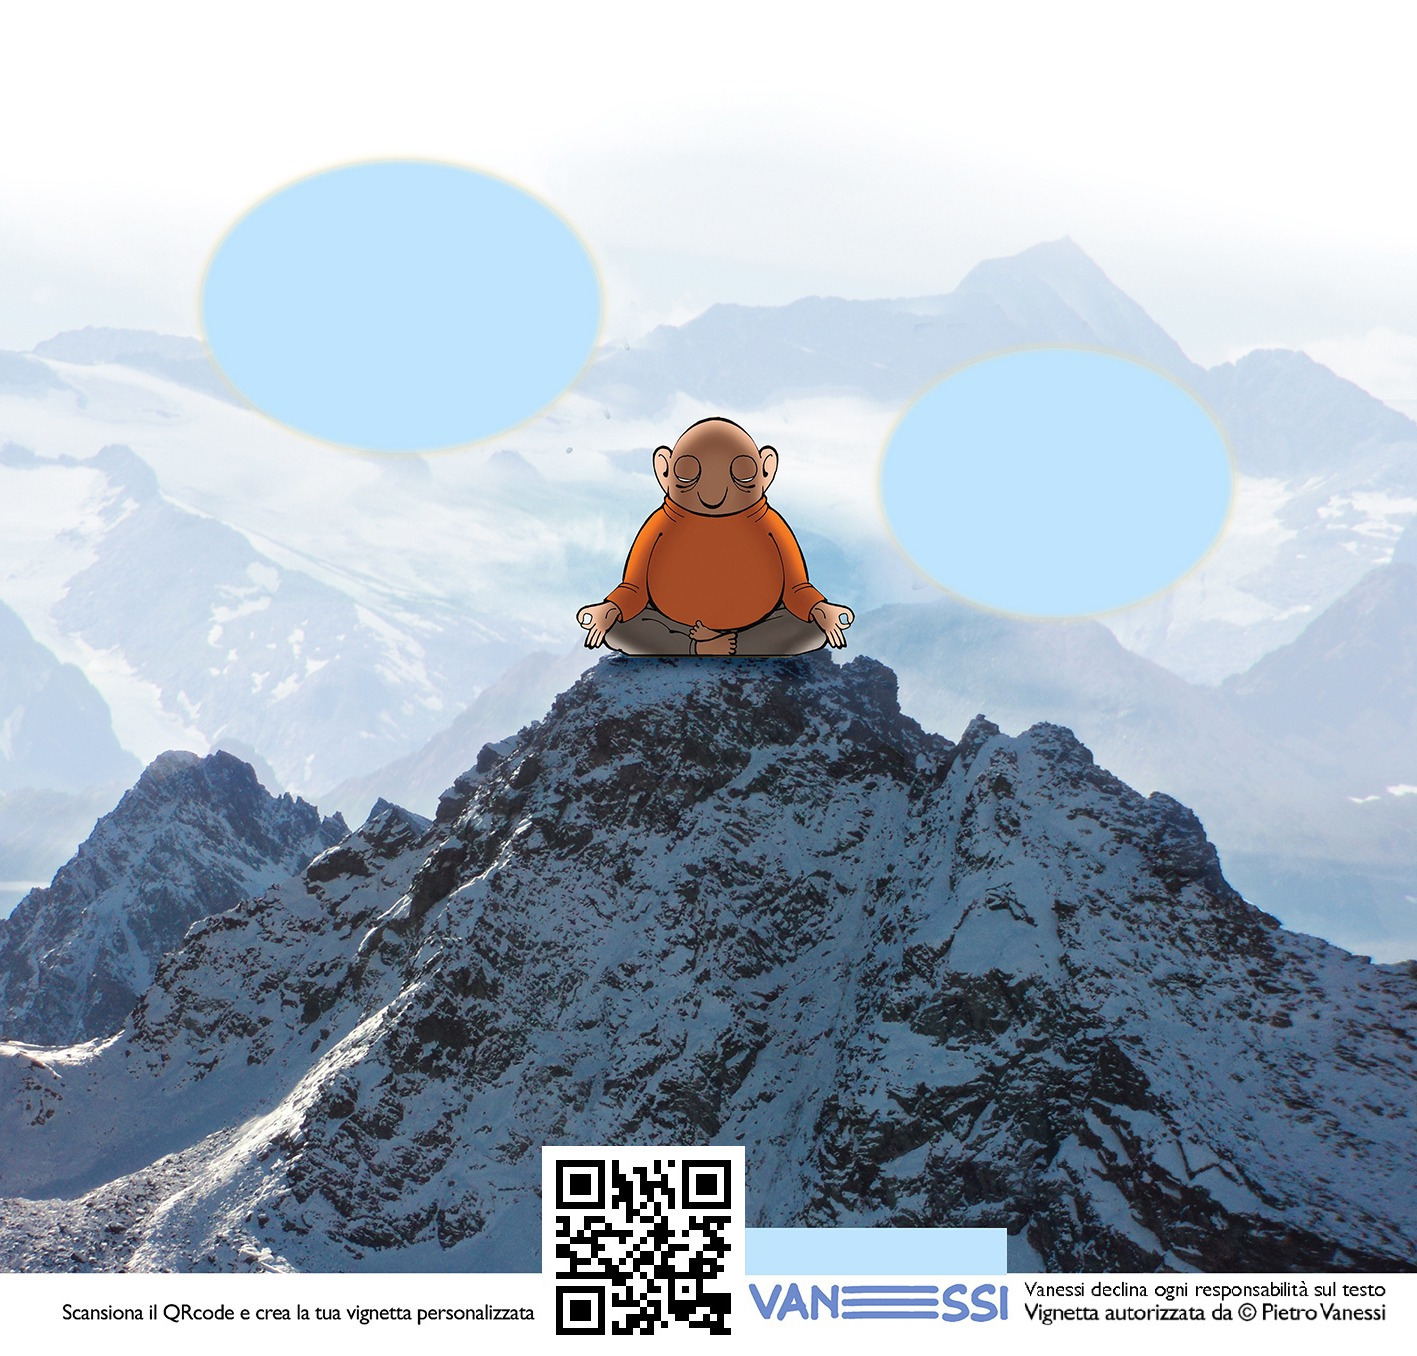 Vignetta personalizzabile che rappresenta l'idiota zen, in meditazione, sulla cima di una montagna innevata